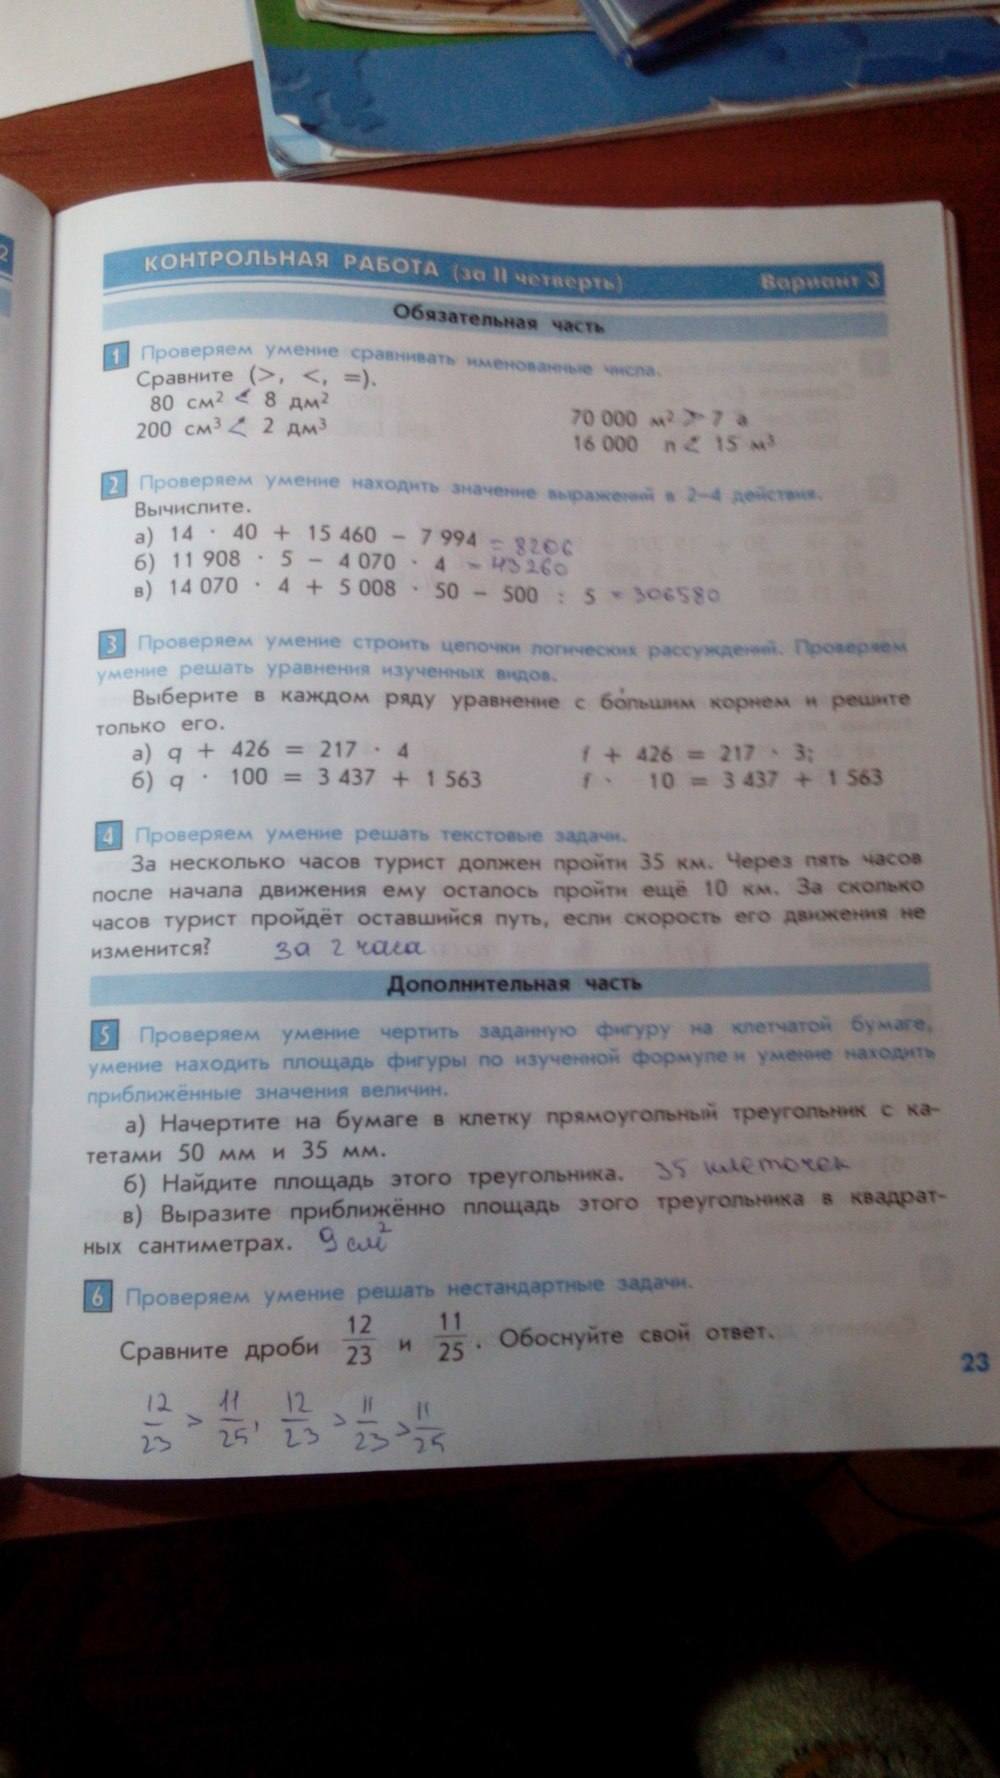 Тесты и контрольные работы, 4 класс, Козлова, Рубин, 2011, задание: стр. 23